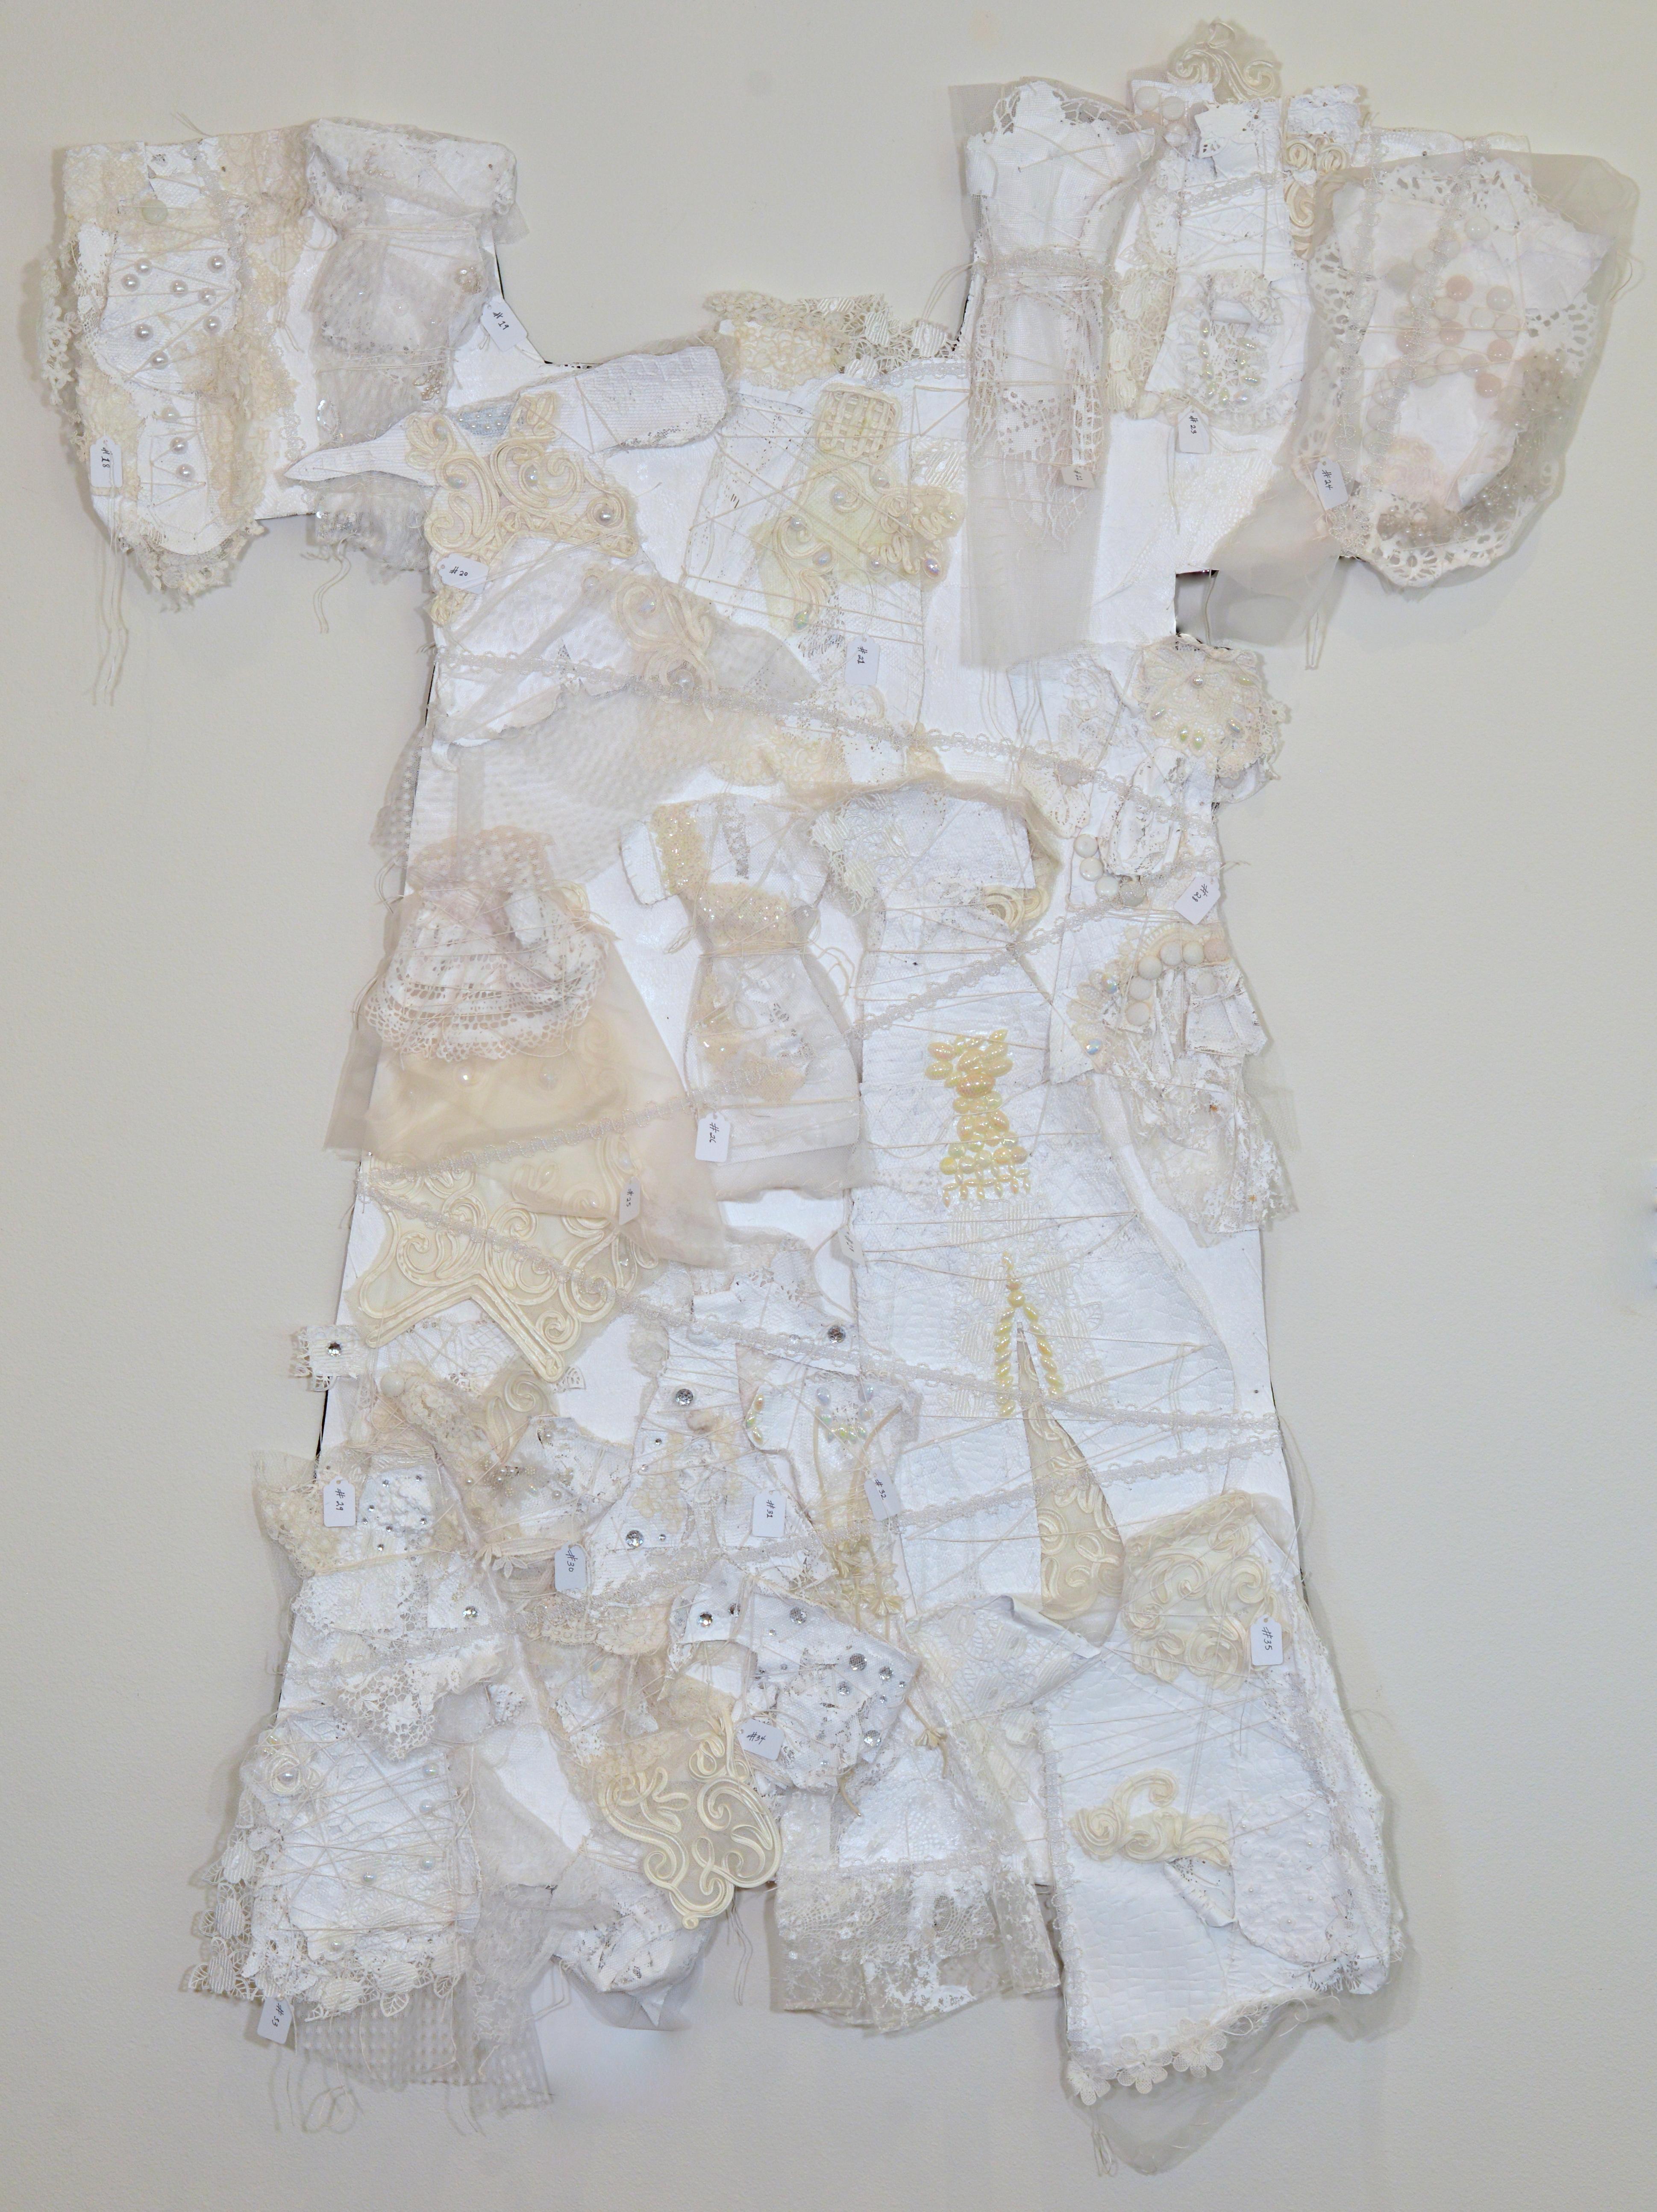 Remnants 4, Großes weißes Kleid mit 17 kleinen Kleidern, genäht auf